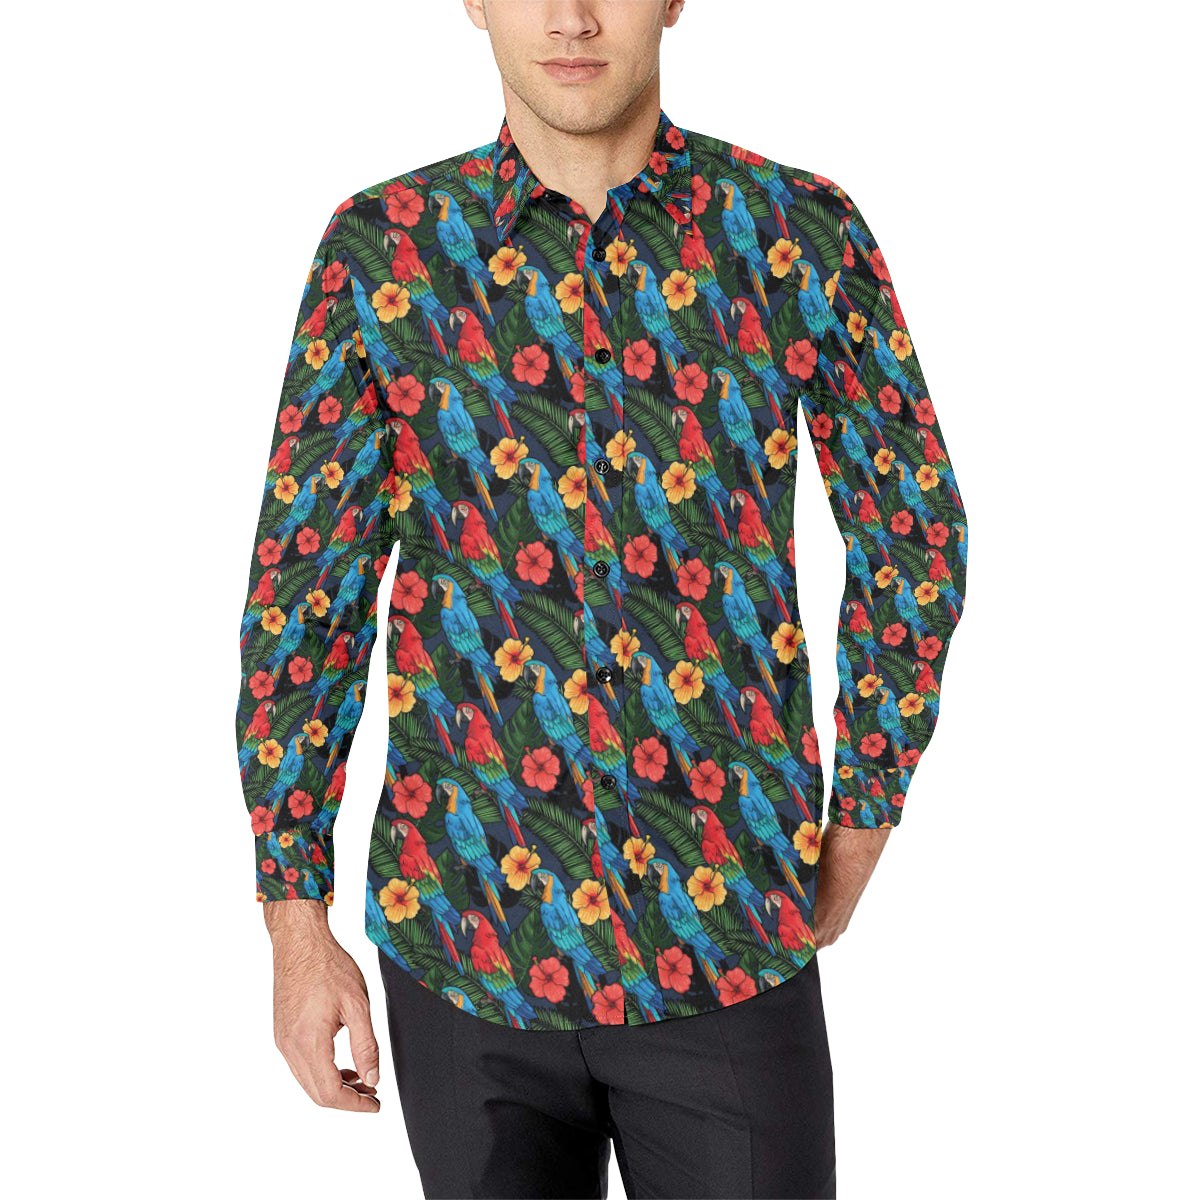 Parrot Pattern Print Design A01 Men's Long Sleeve Shirt